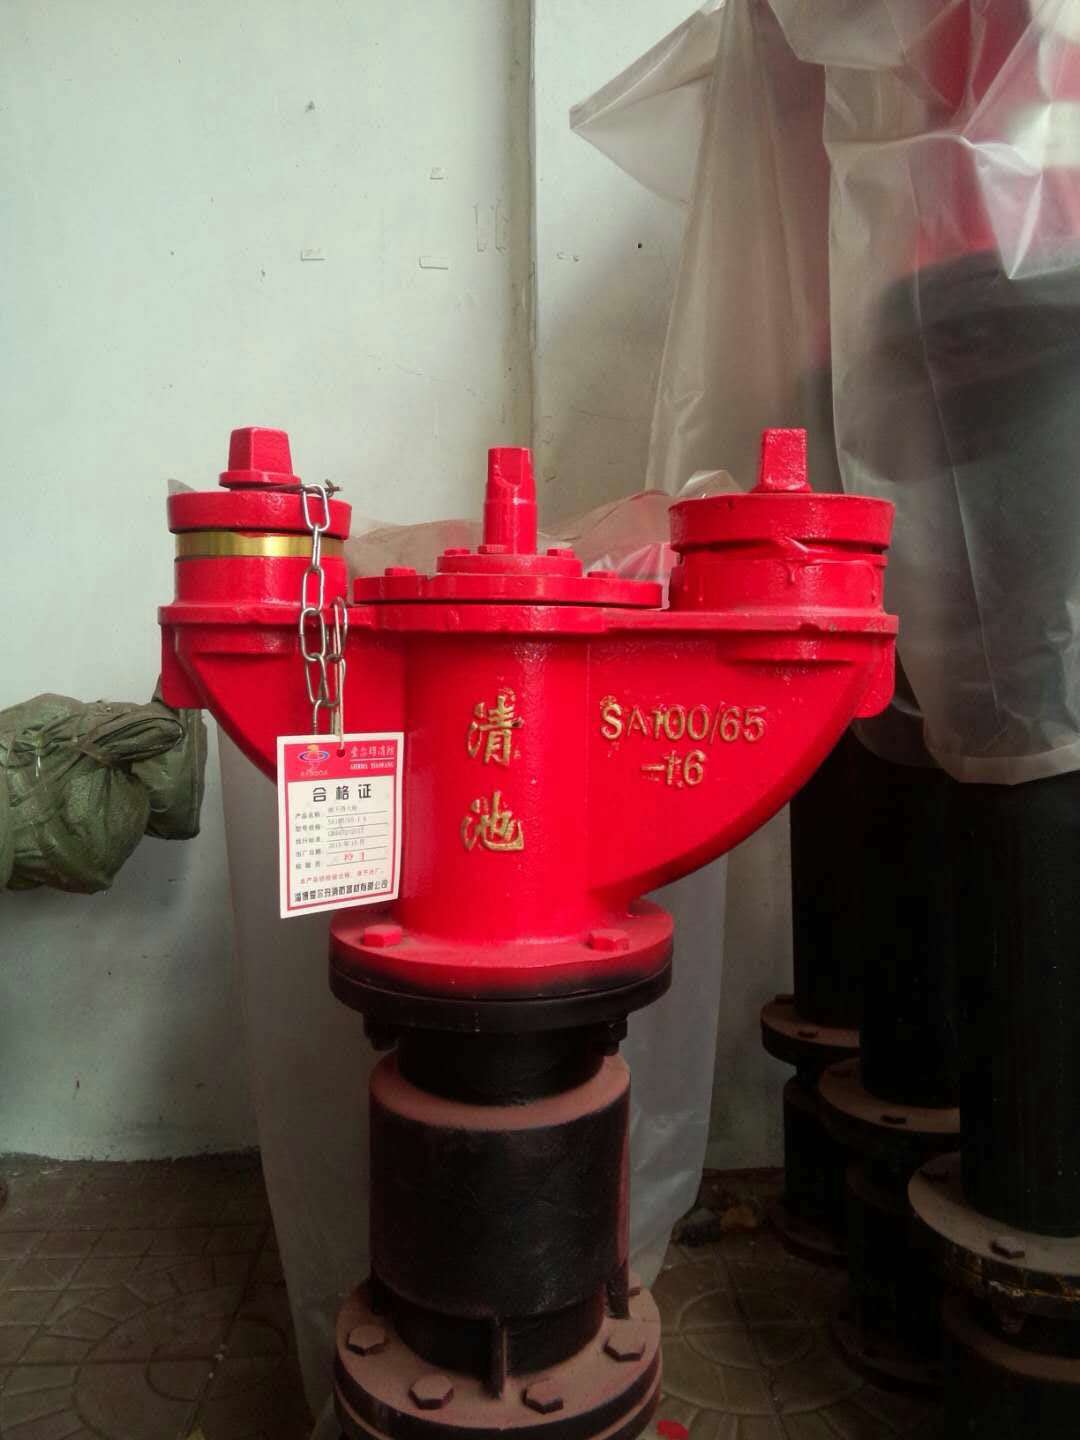 厂家直销辽宁防冻自泄式室外地下消火栓 SA100/65-1.6 价格型号图片